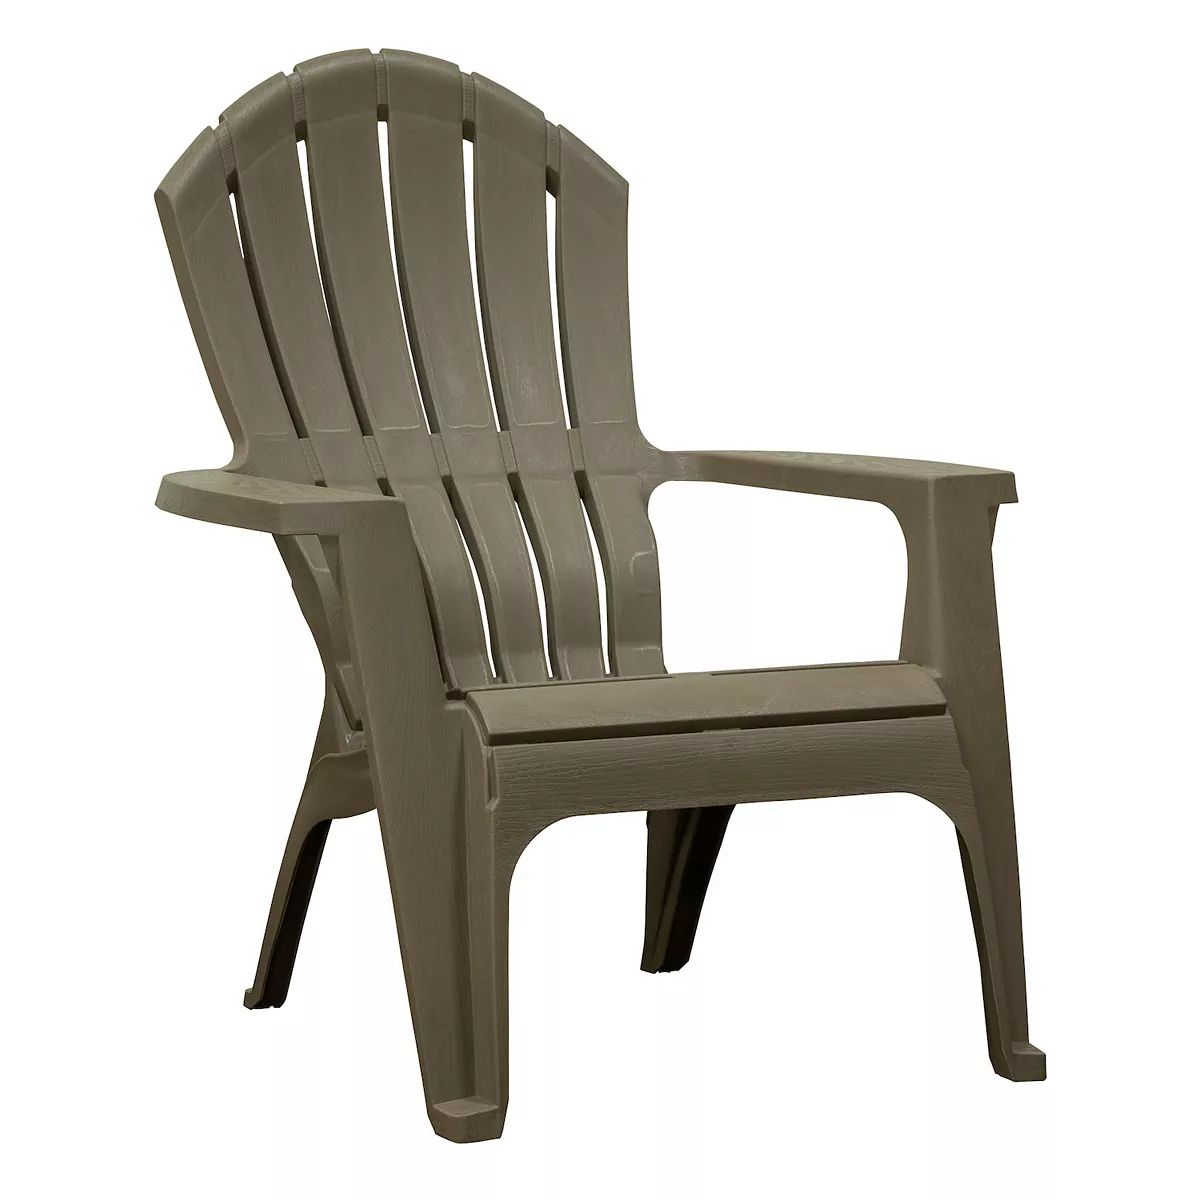 Adam's MFG RealComfort Adirondack Chair | Kohl's